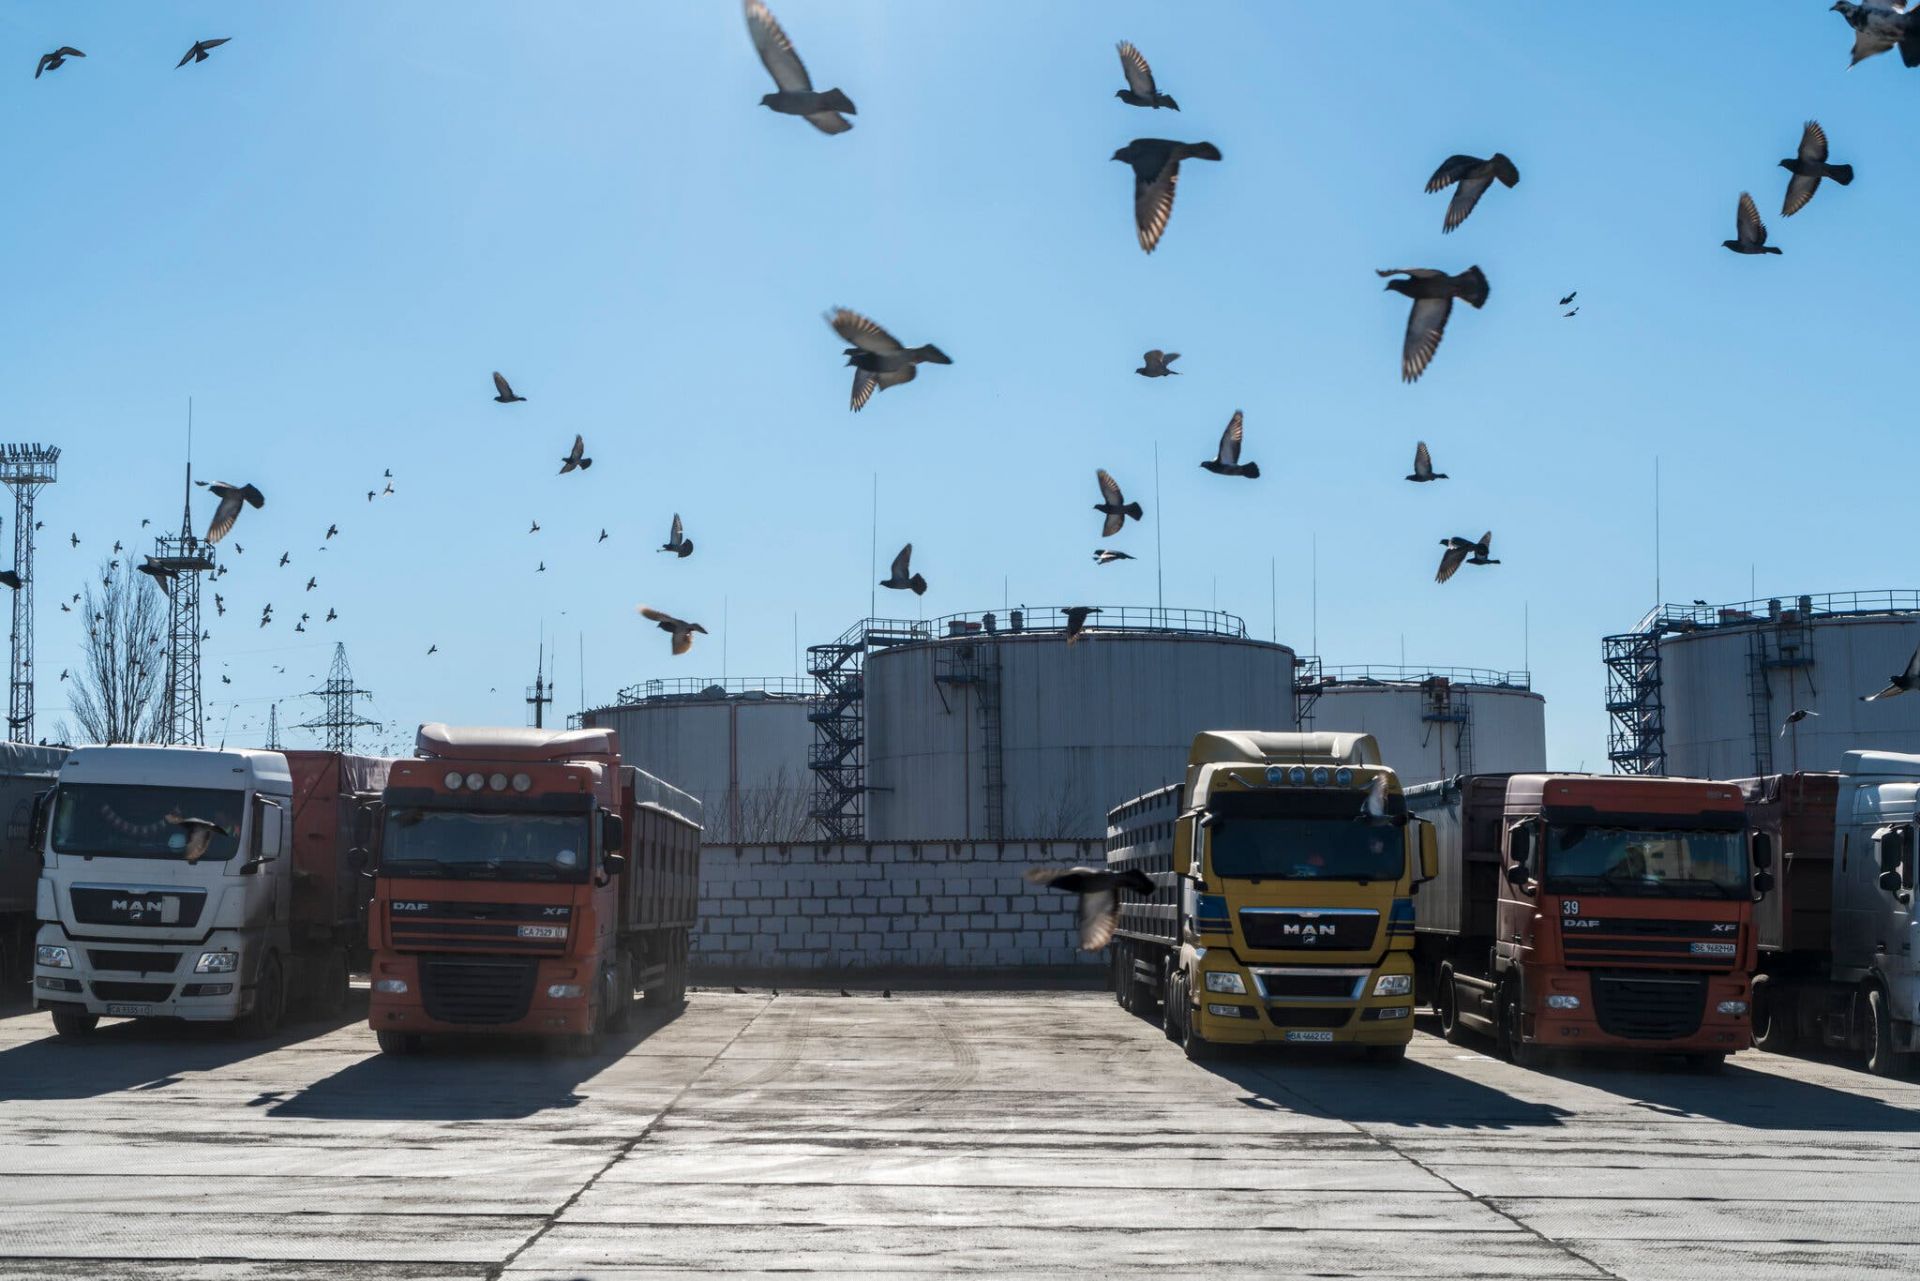 Xe tải chất đầy lúa mì tại cảng. Nga và Ukraine cùng nhau chiếm gần 30% lượng lúa mì xuất khẩu toàn cầu.Tín dụng...Brendan Hoffman cho The New York Times